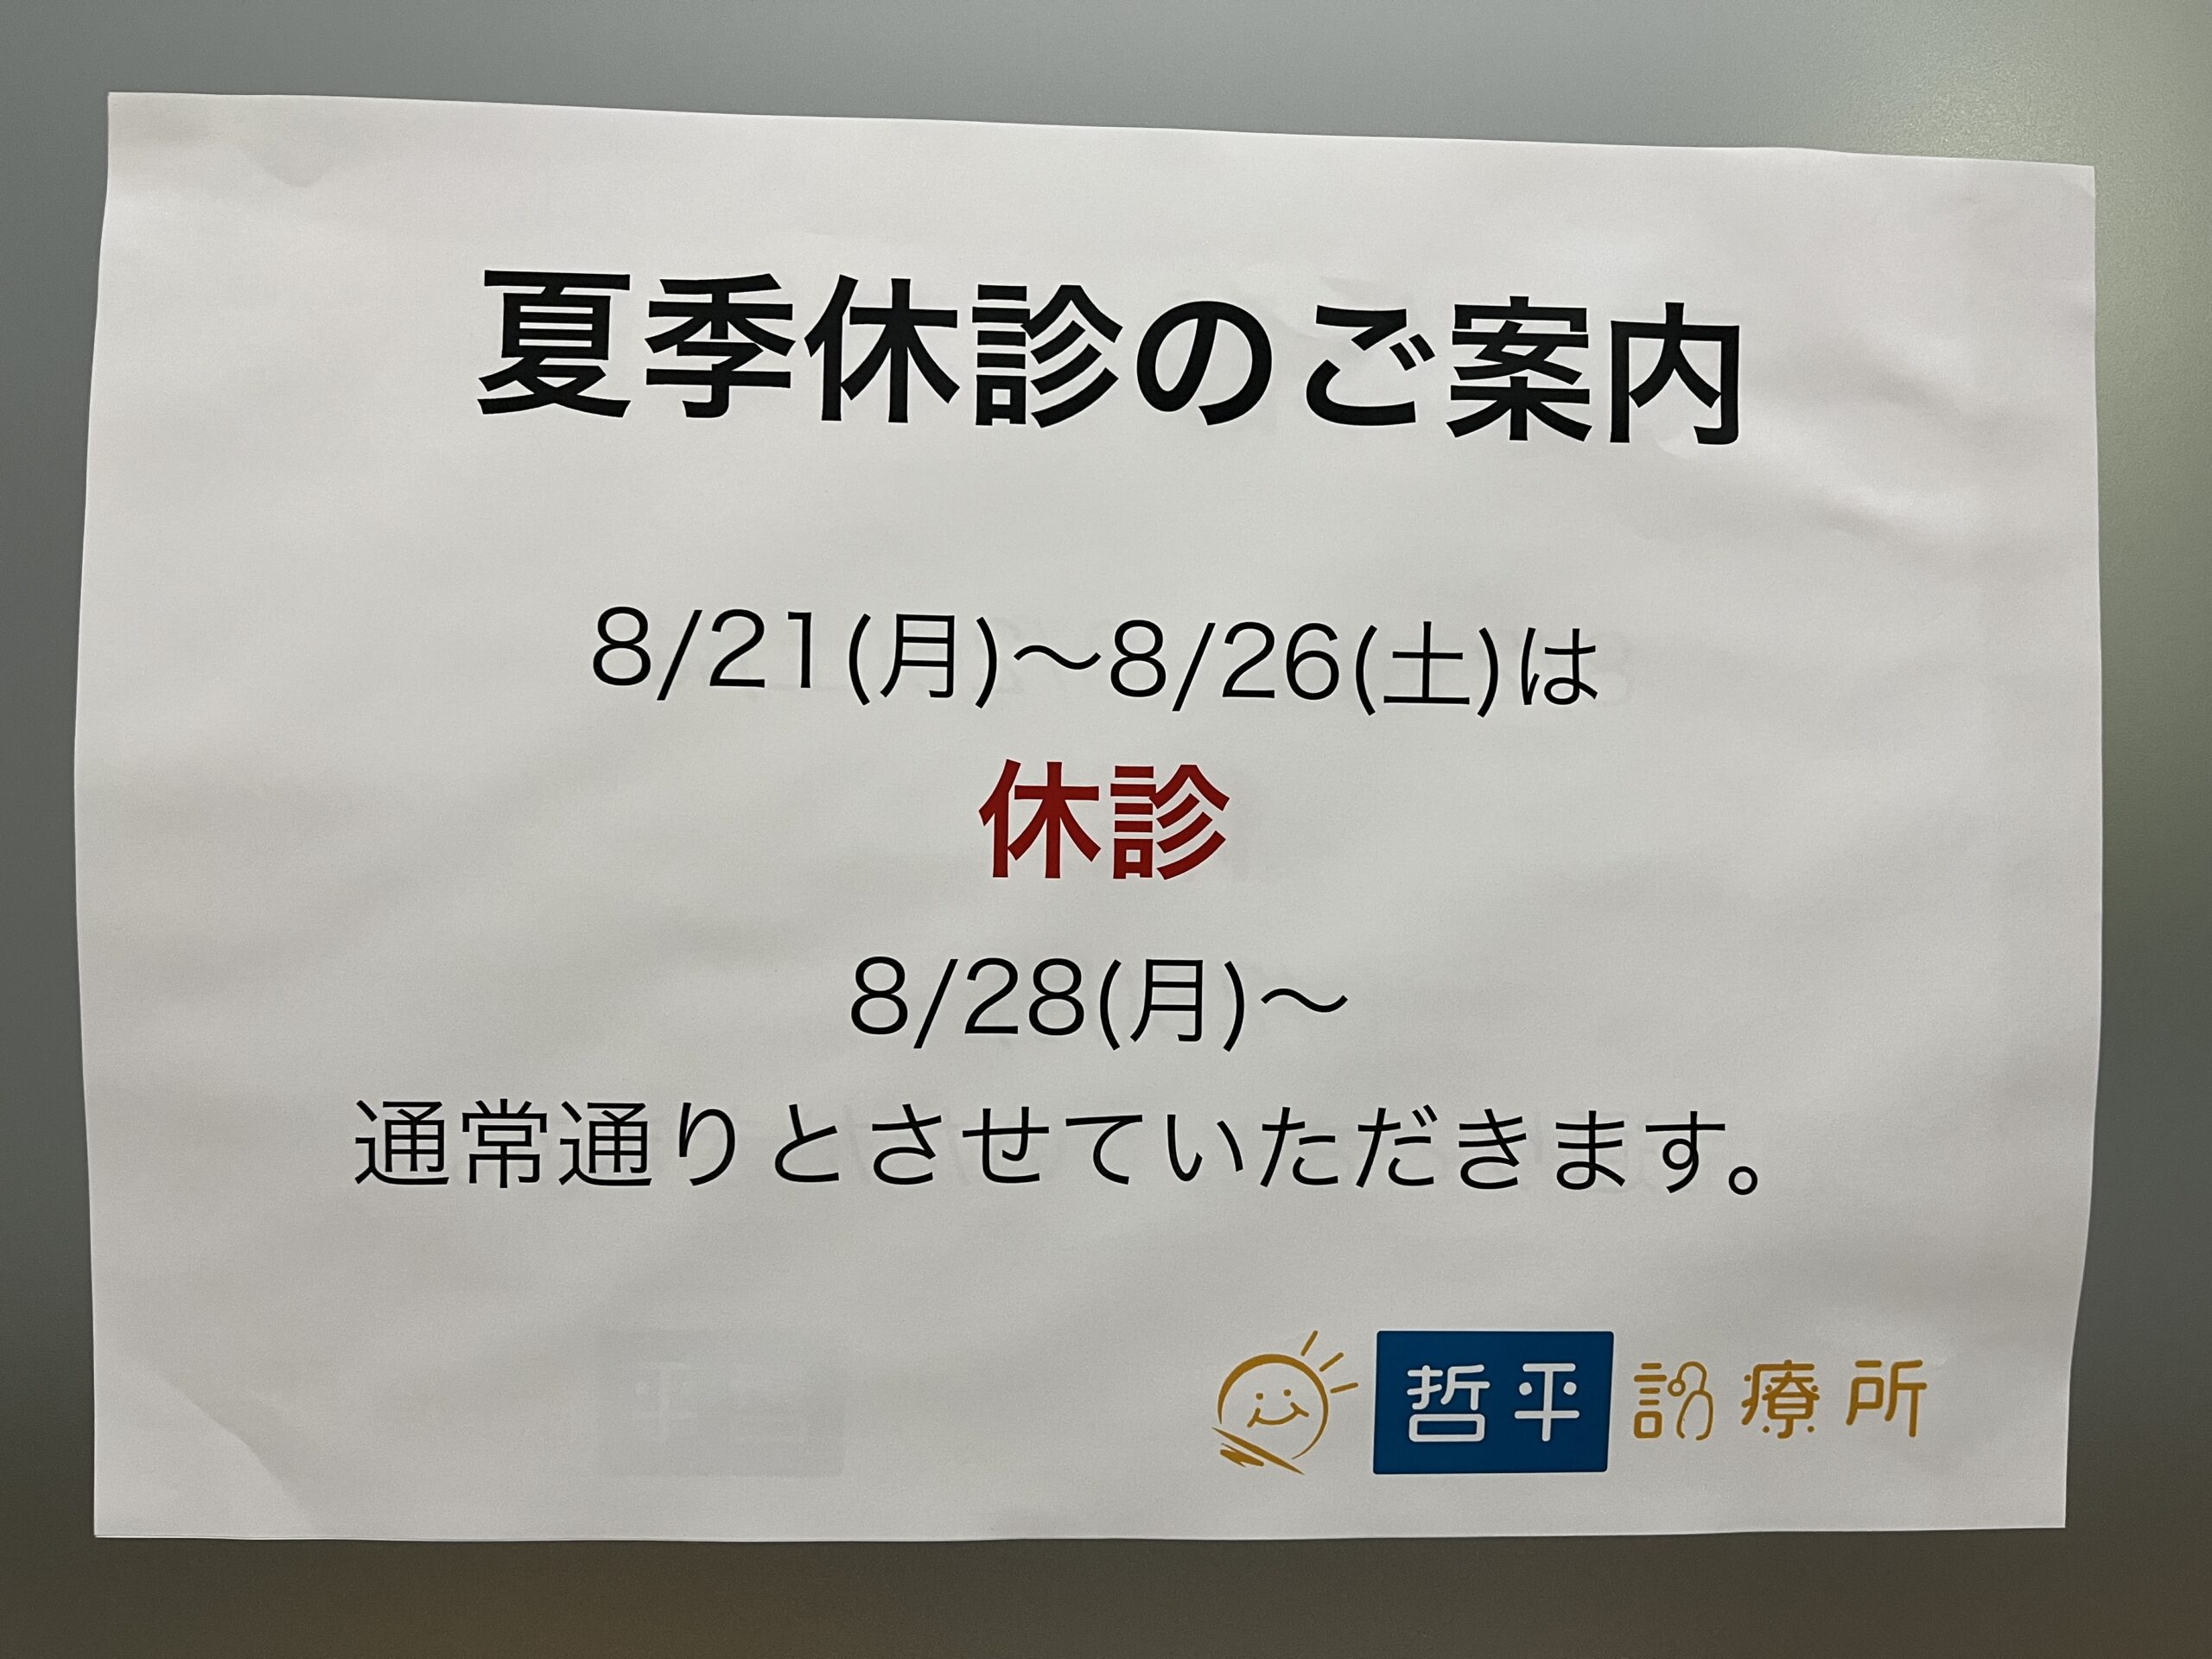 夏期休診(8/21~26)のお知らせ